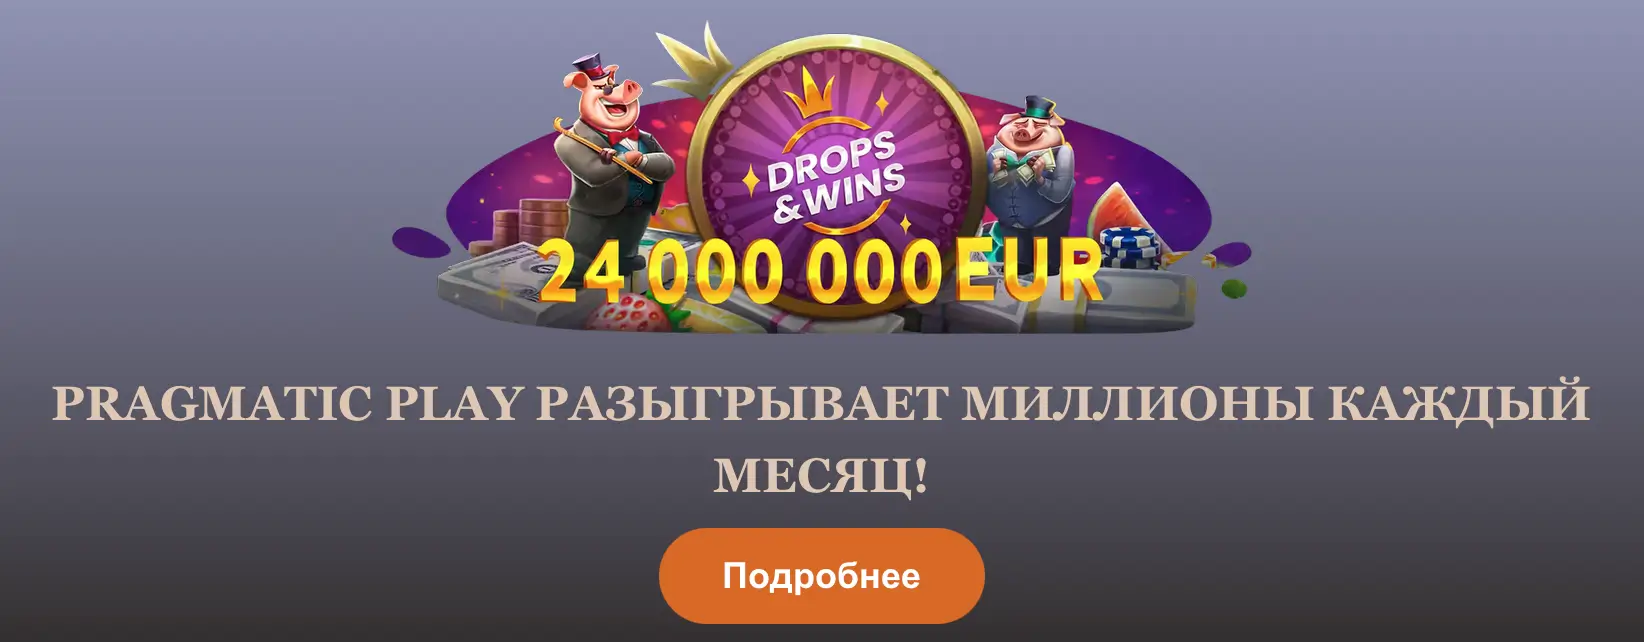 Выиграй 24 000 000 евро на joy casino